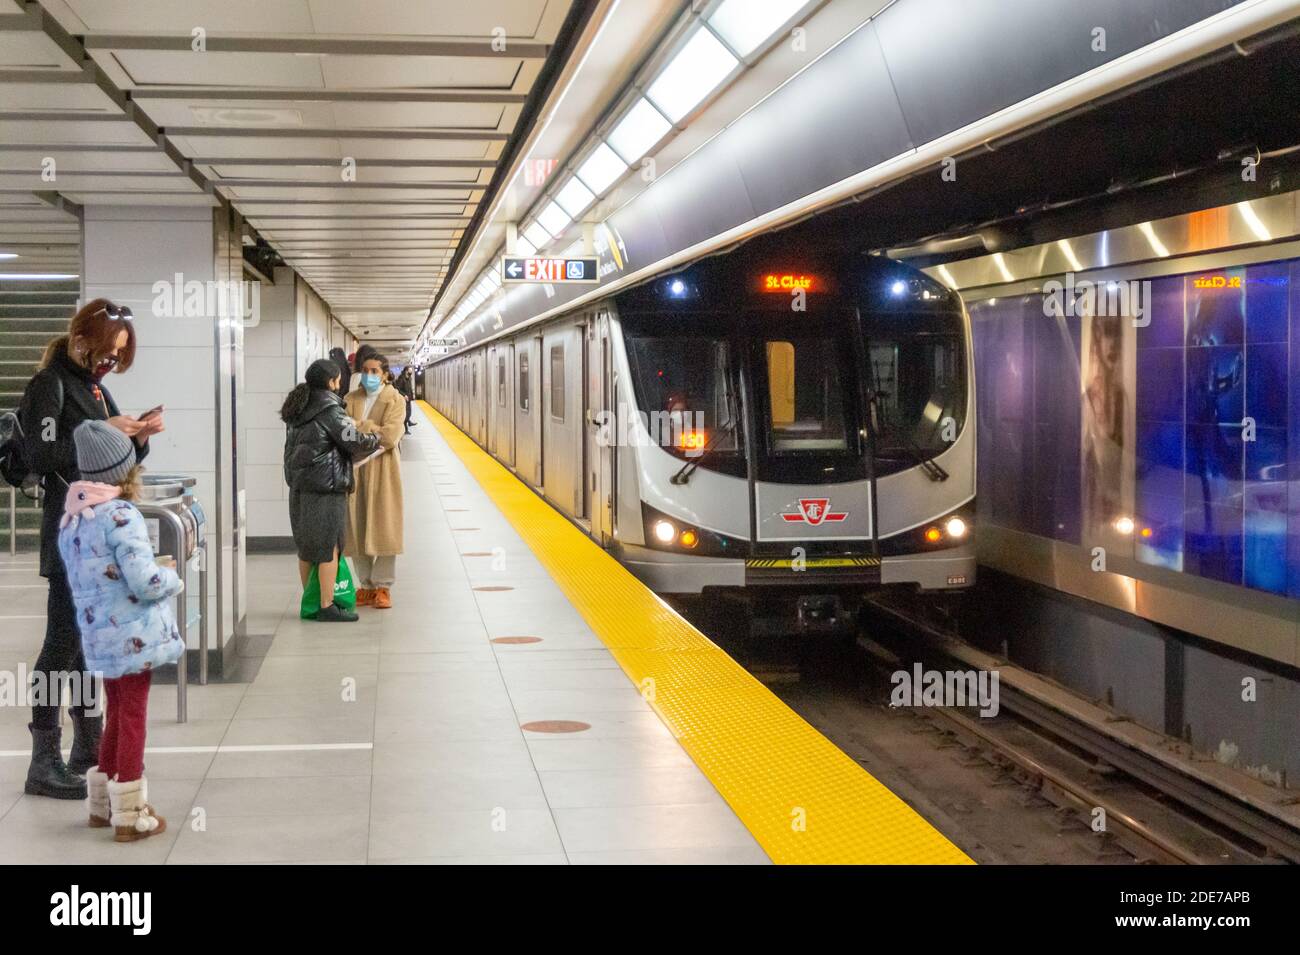 Persone che indossano maschere facciali di protezione nella piattaforma metropolitana sotterranea appartenente alla Toronto Transit Commission o TTC. È il tempo dei Covi Foto Stock